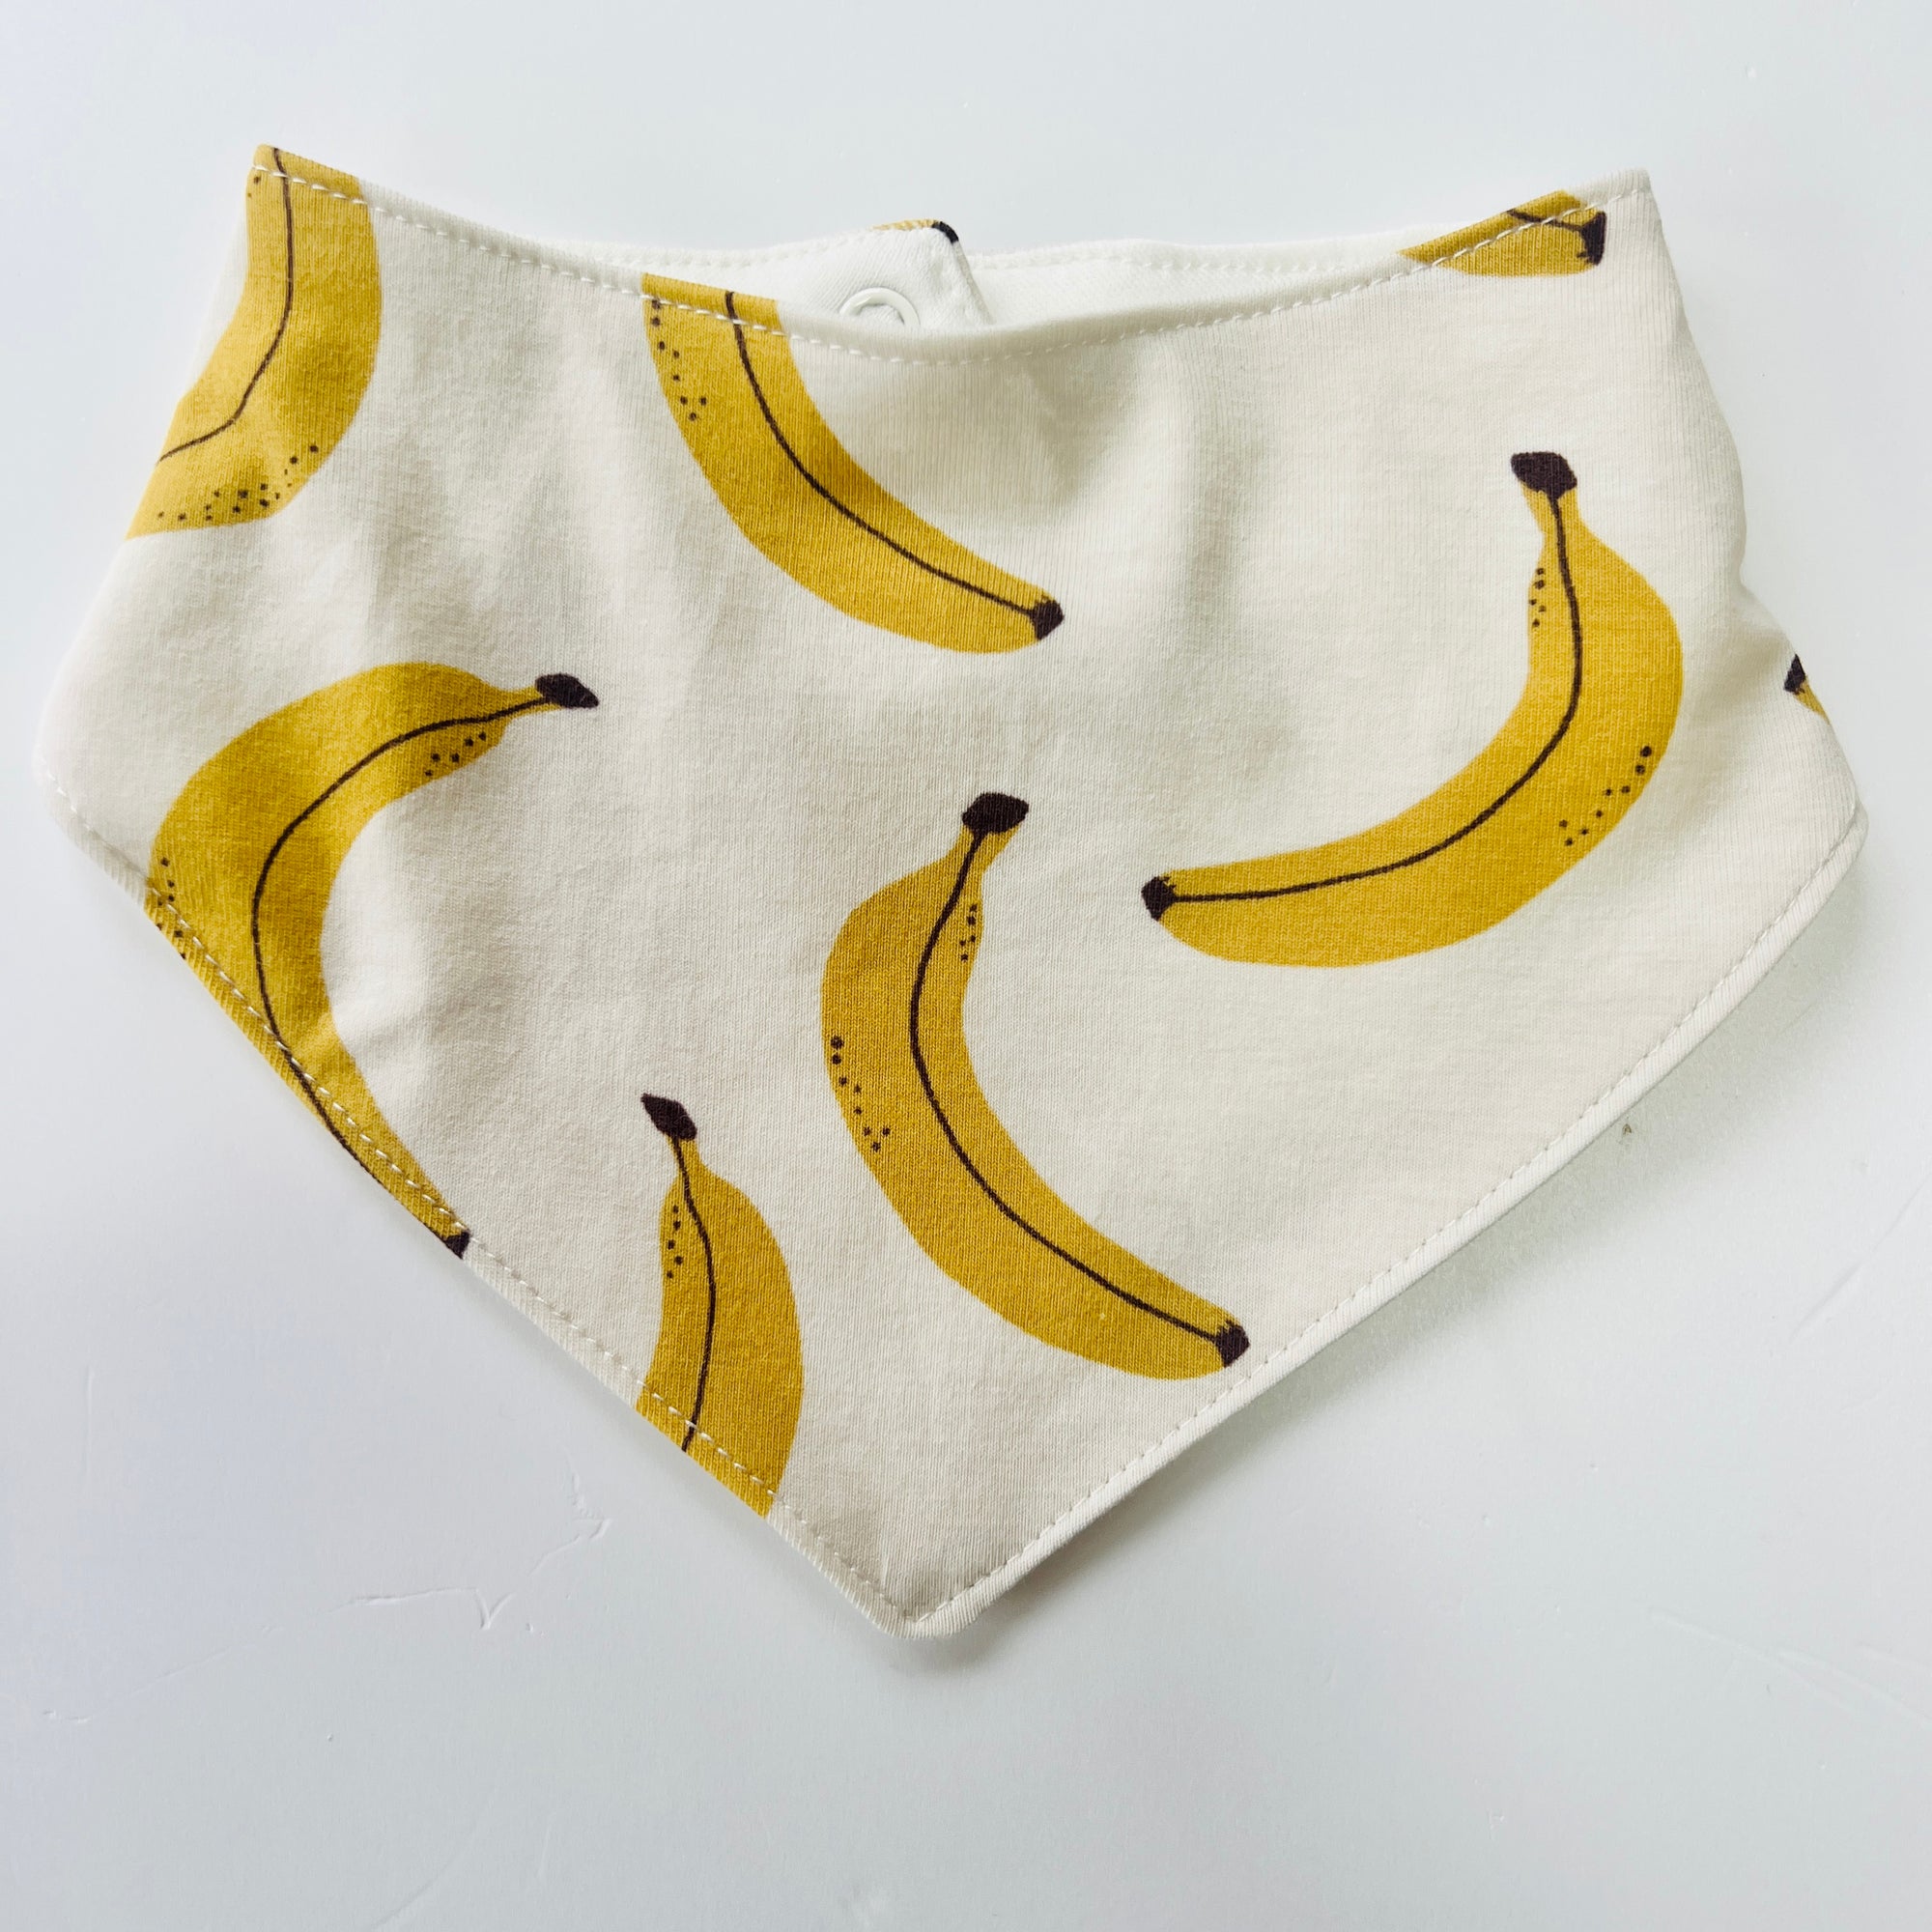 Eddie & Bee organic cotton Baby Dribble bib  in Cream "Banana" print.